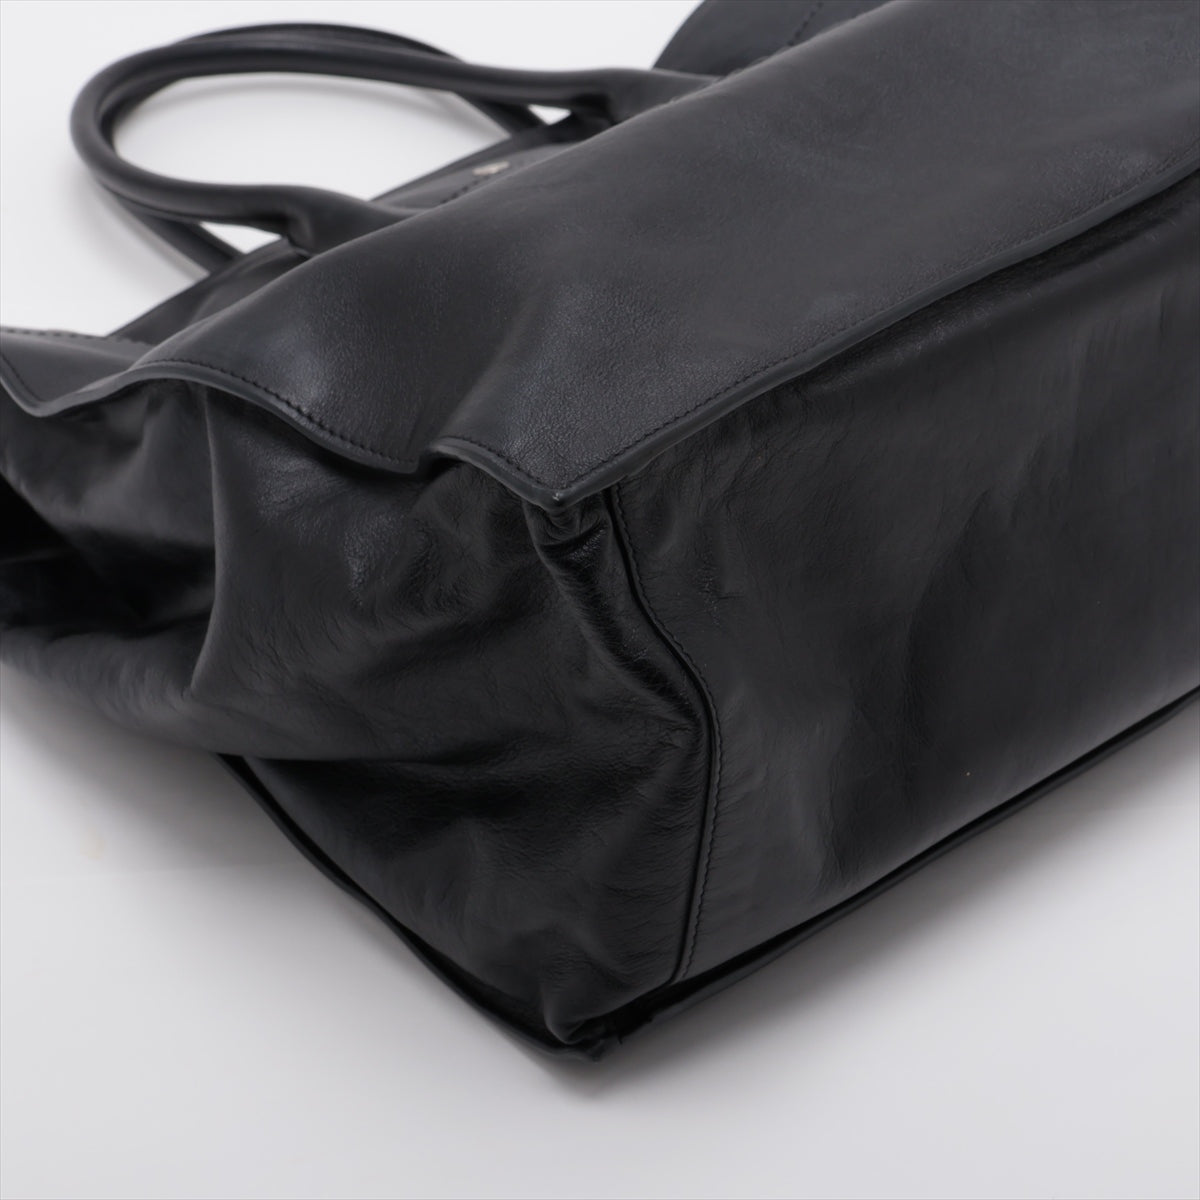 Saint Laurent Paris Rive Gauche Leather Tote bag Black 587273